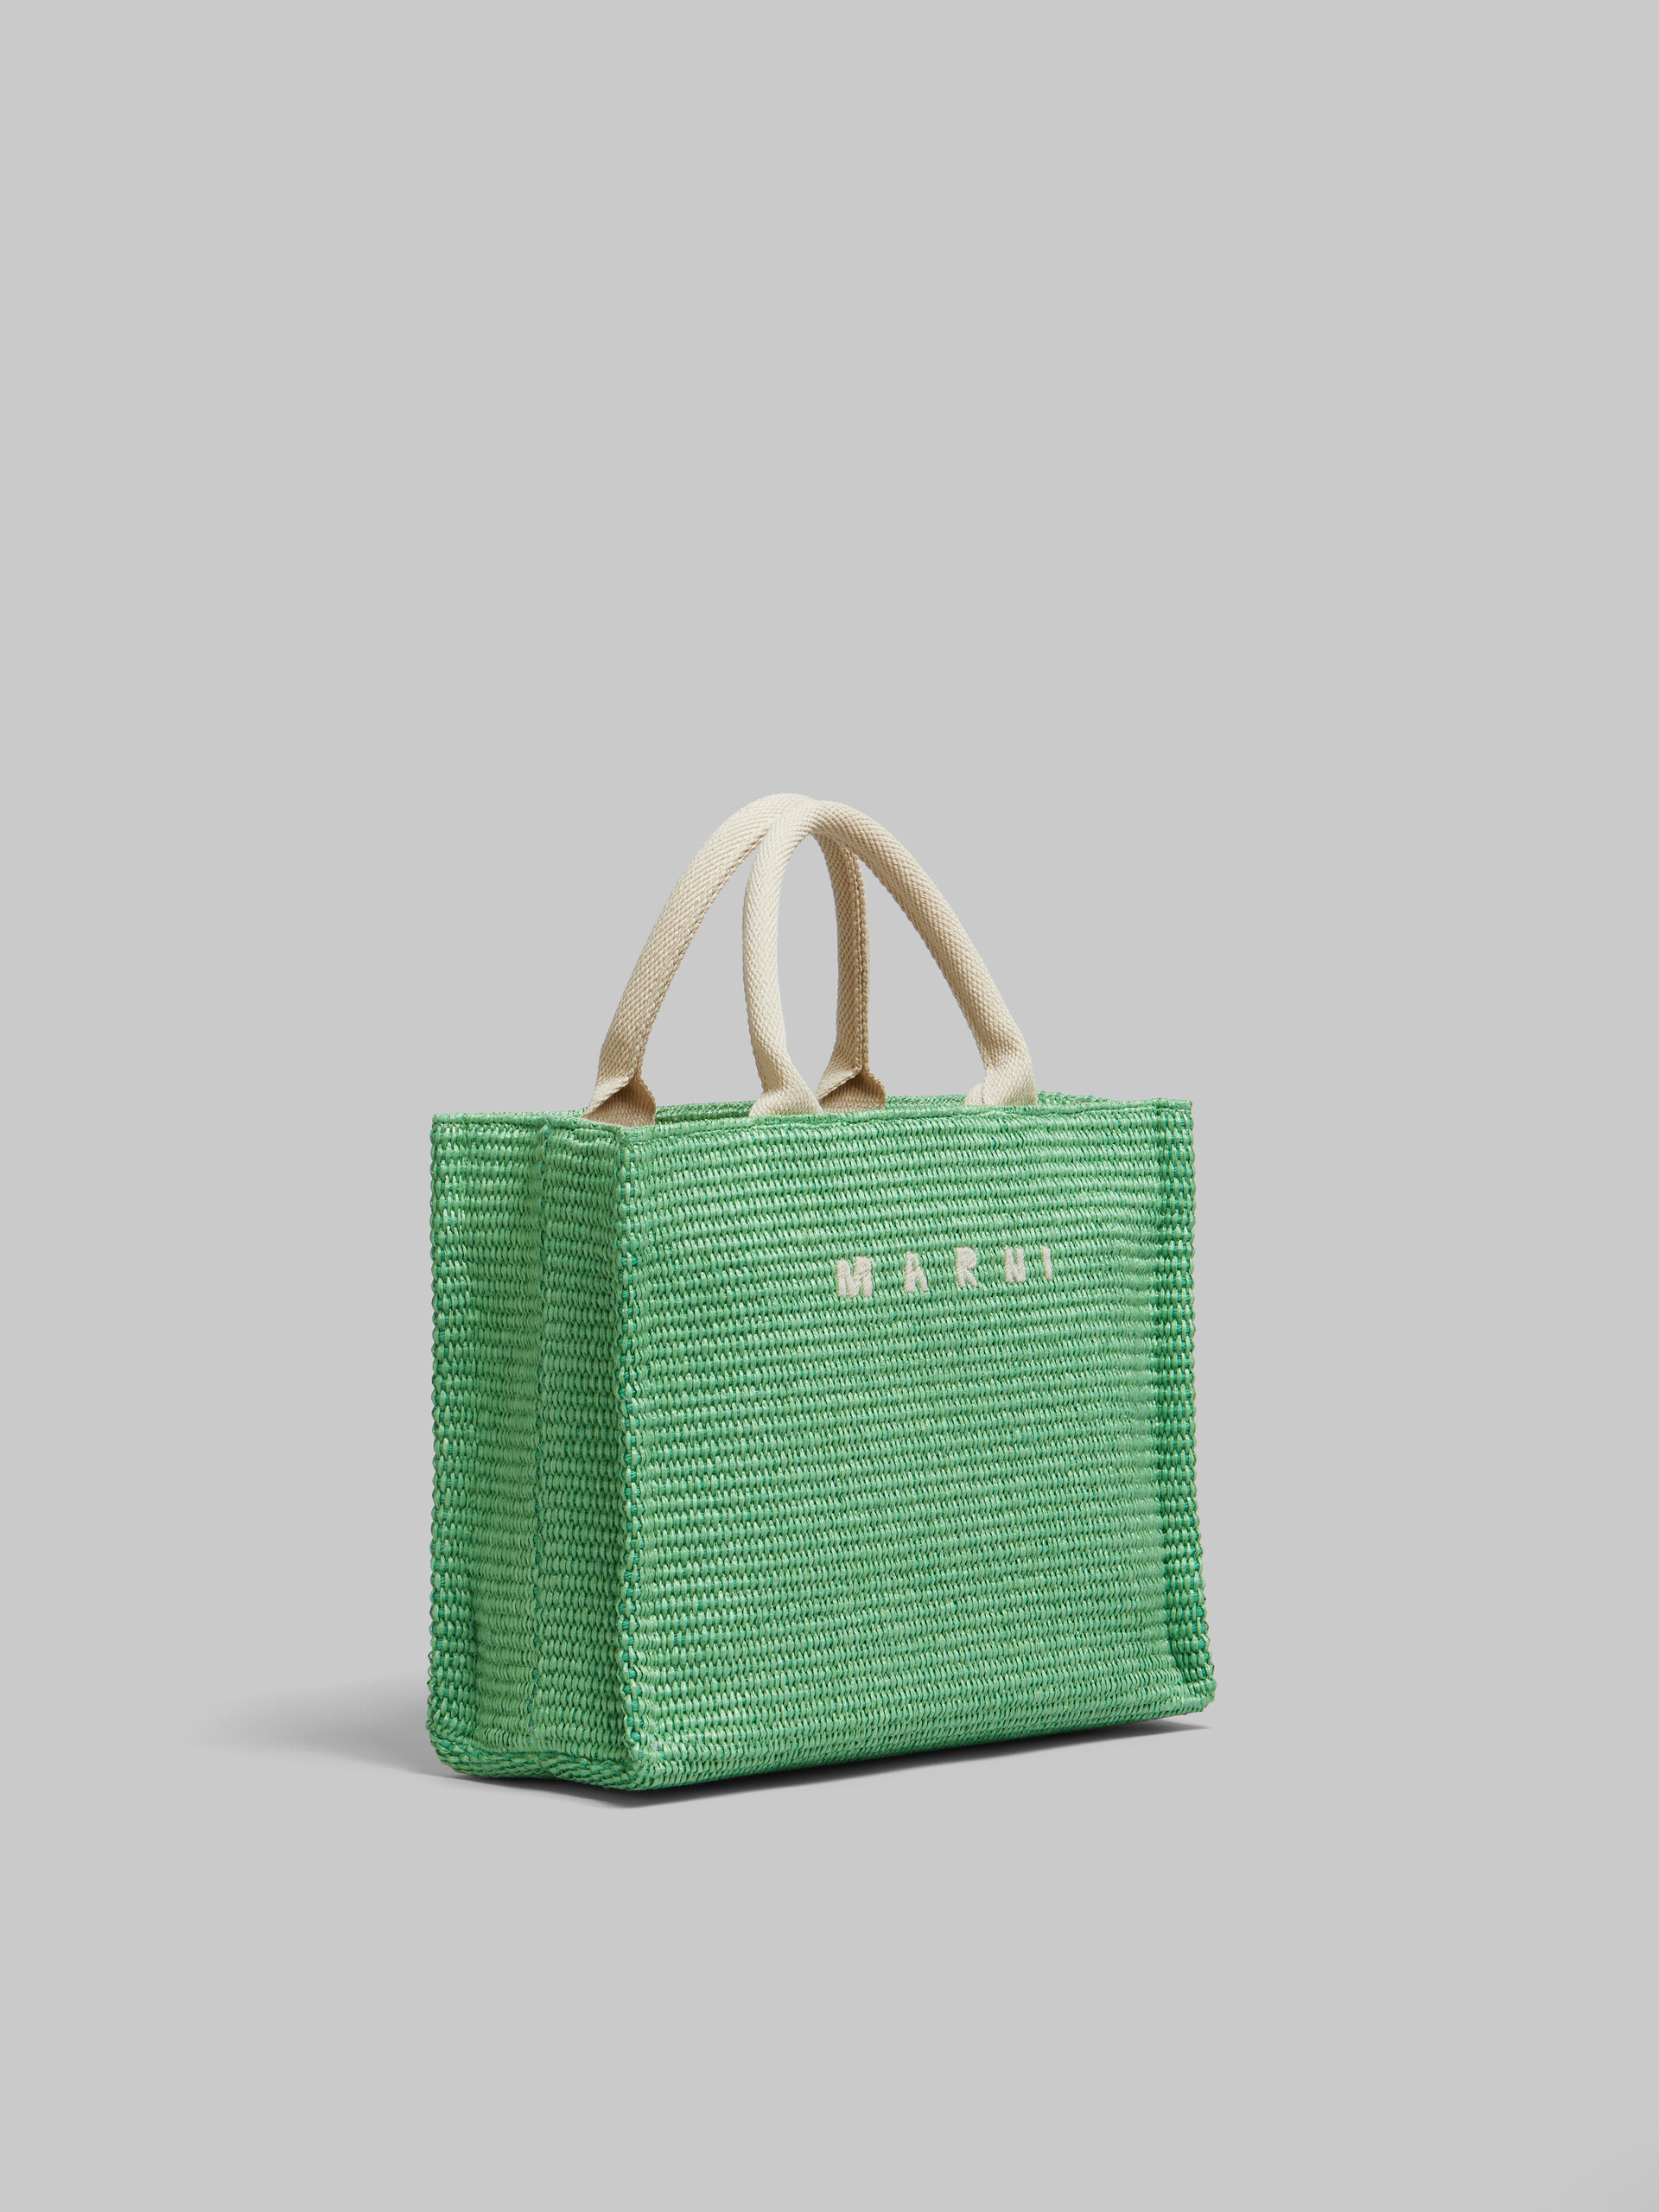 Tote Bag Piccola in tessuto effetto rafia lilla - Borse shopping - Image 5